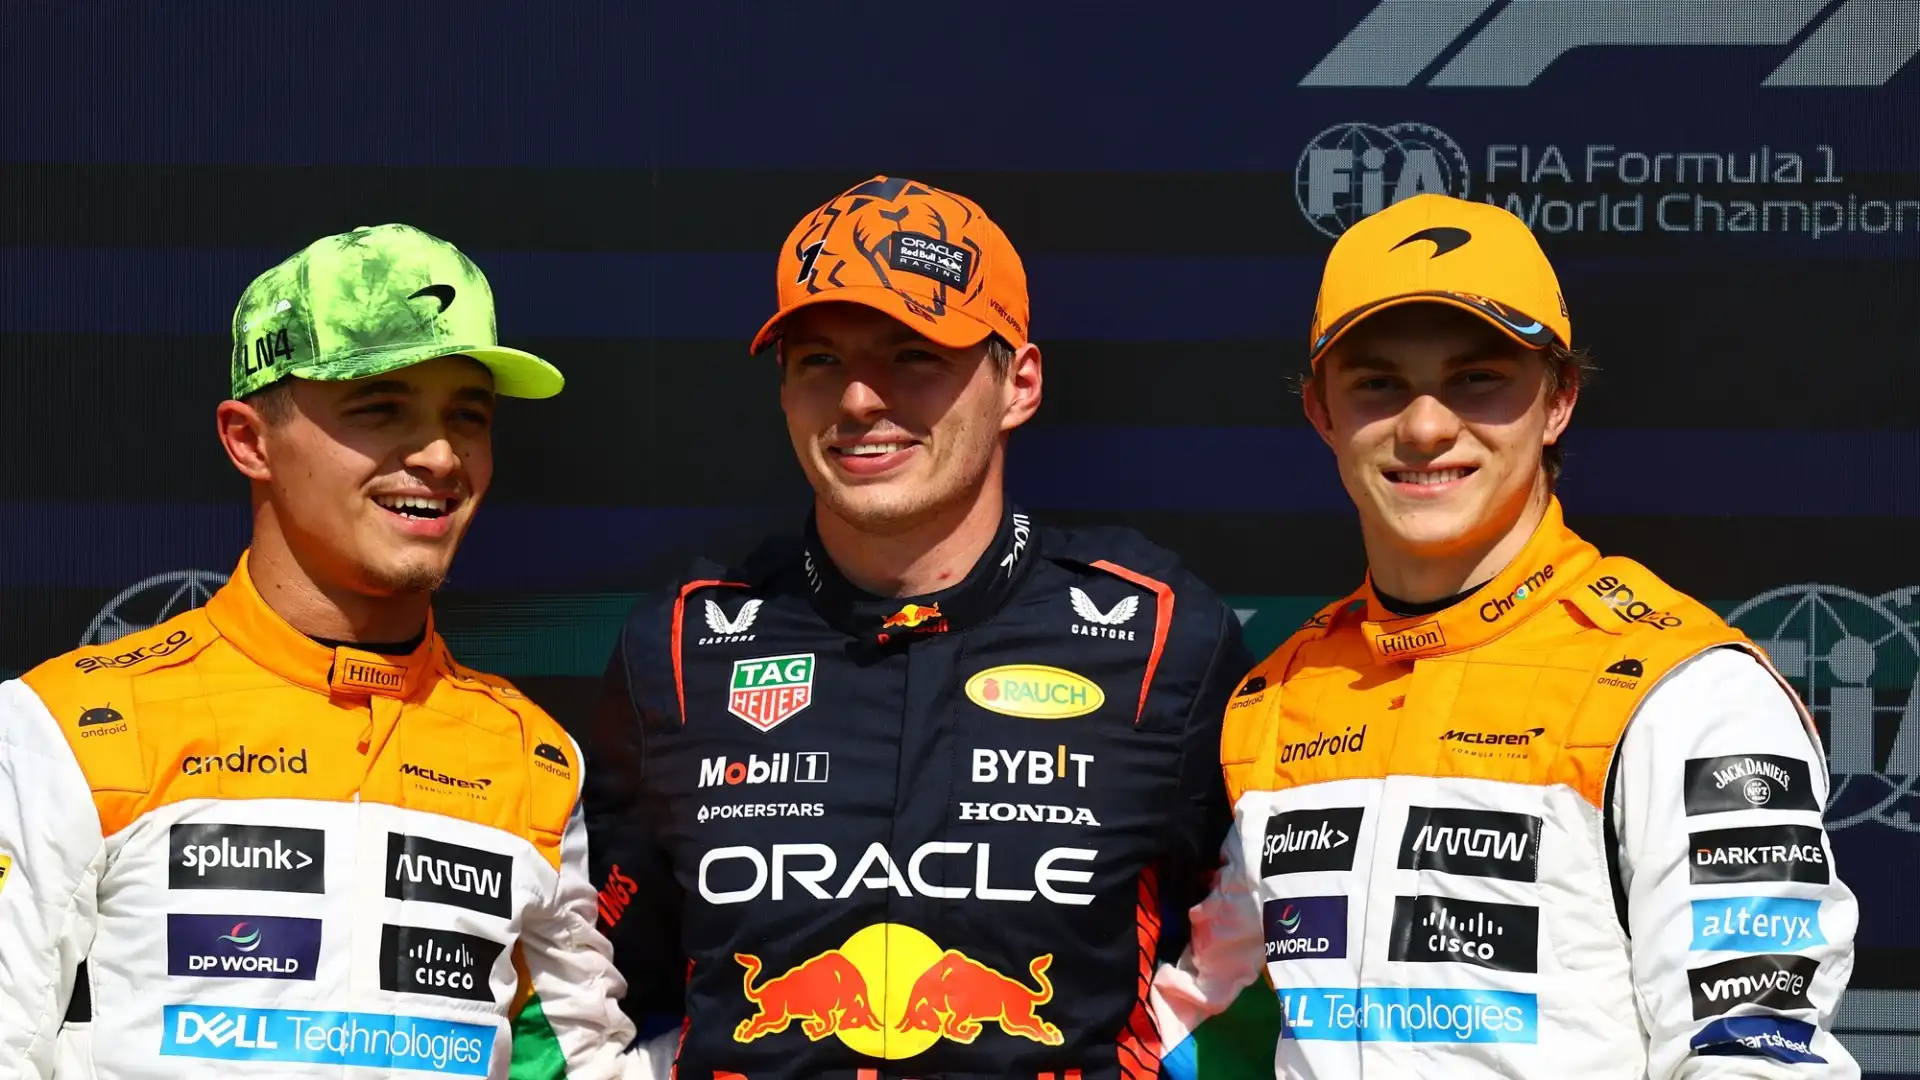 Se fosse team principal, Verstappen oltre a Lando Norris sceglierebbe Oscar Piastri, l'altro pilota della McLaren